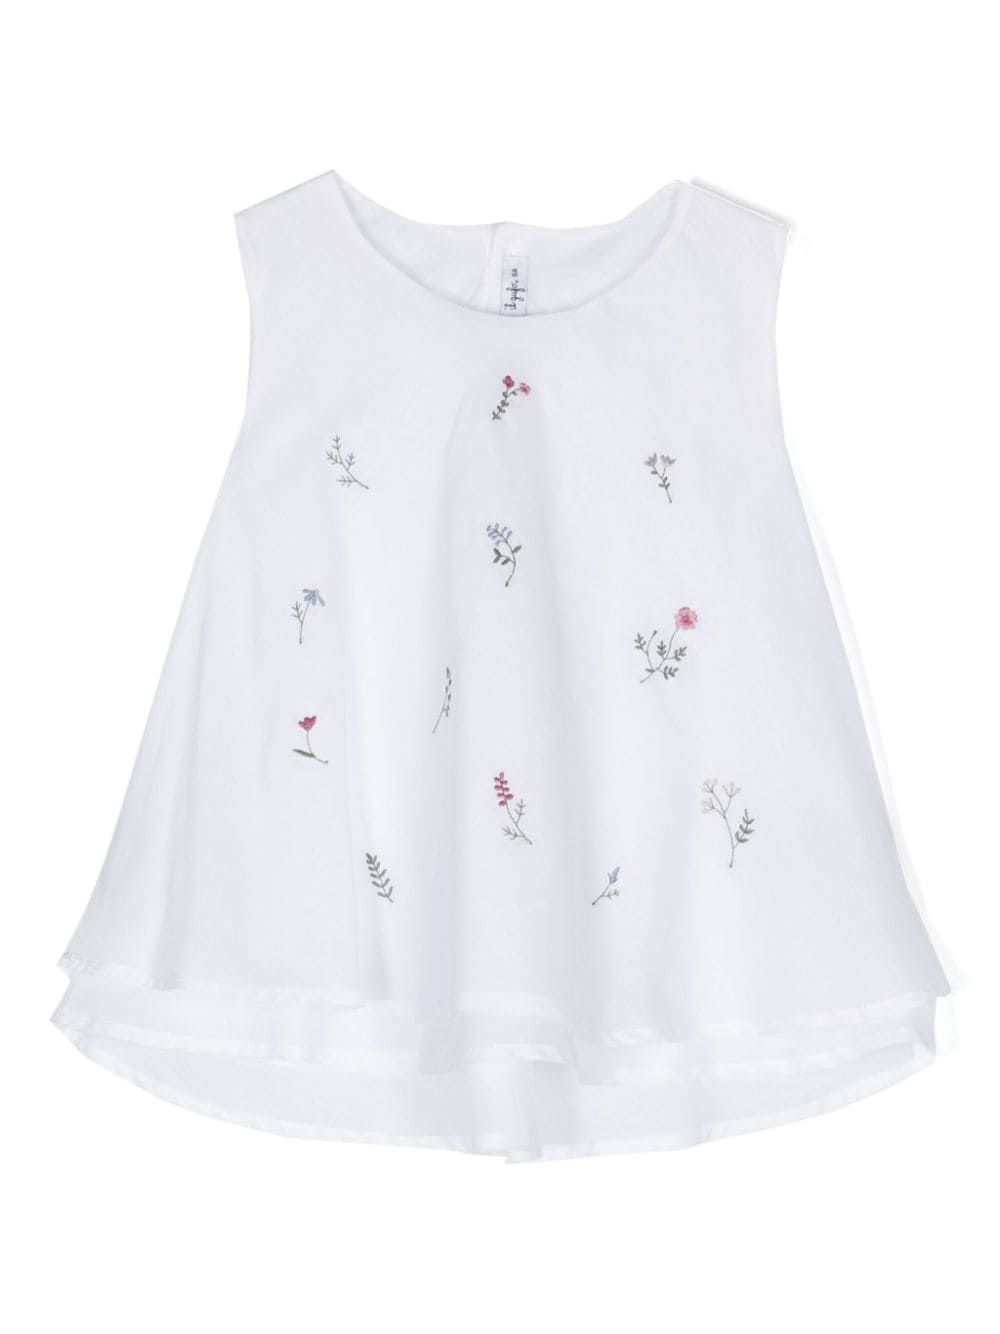 Camicia bianca per bambina con fiori